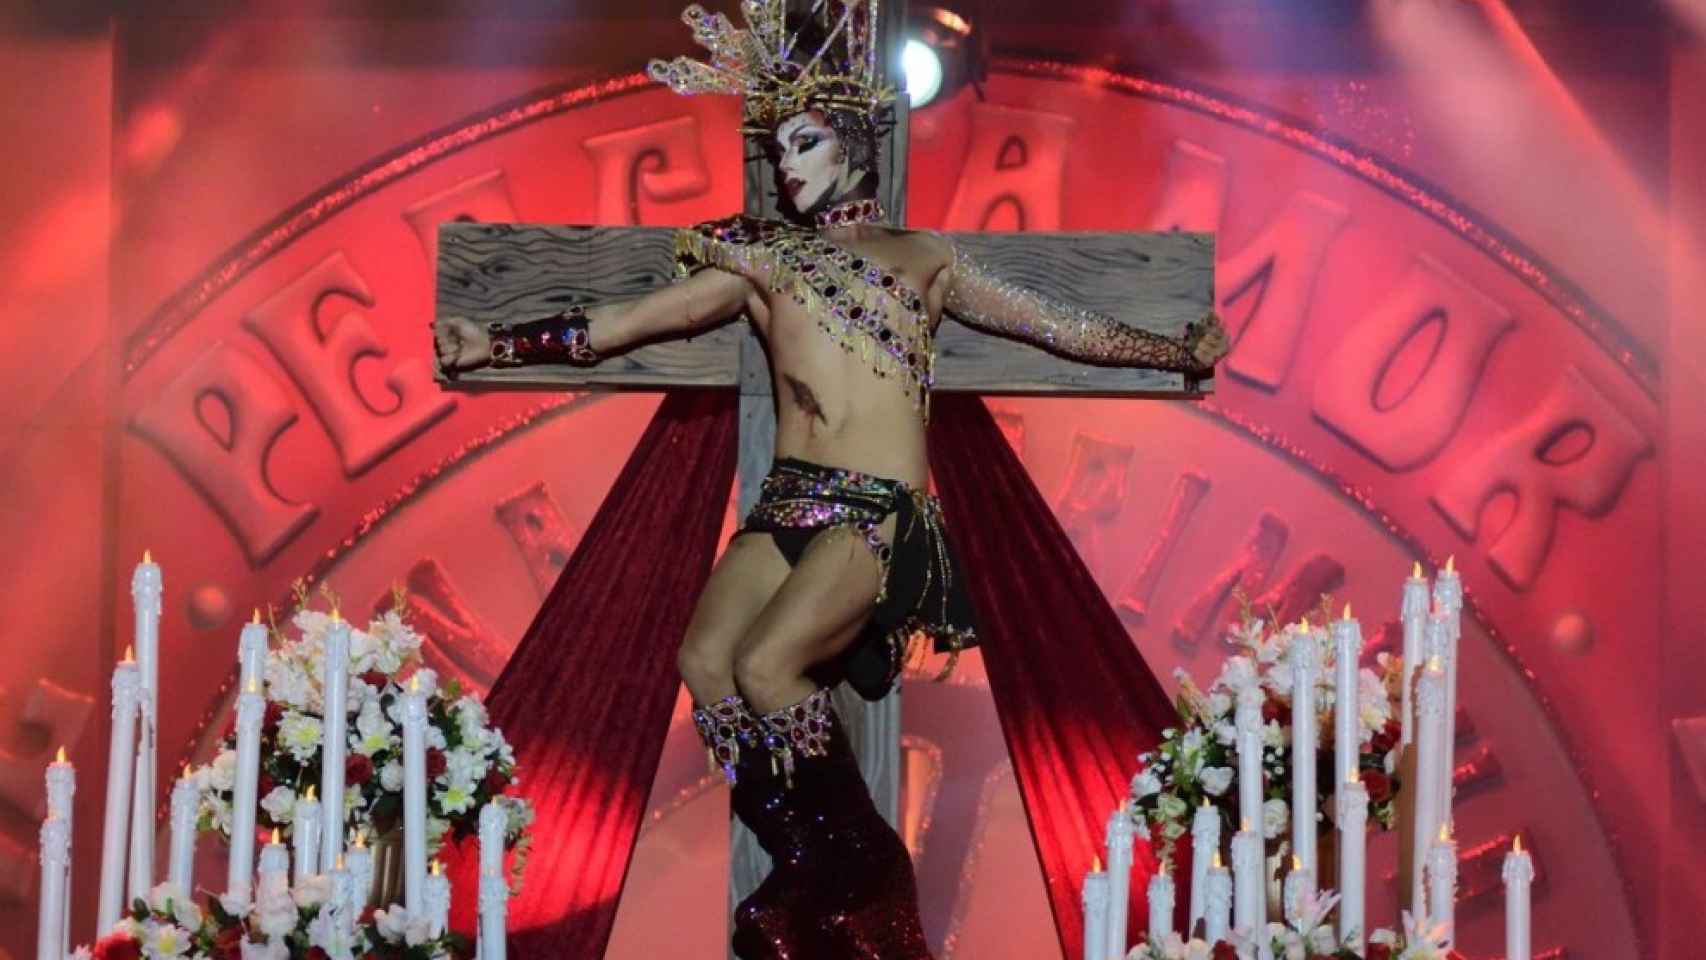 TVE pide perdón por haber emitido la gala Drag Queen de Las Palmas